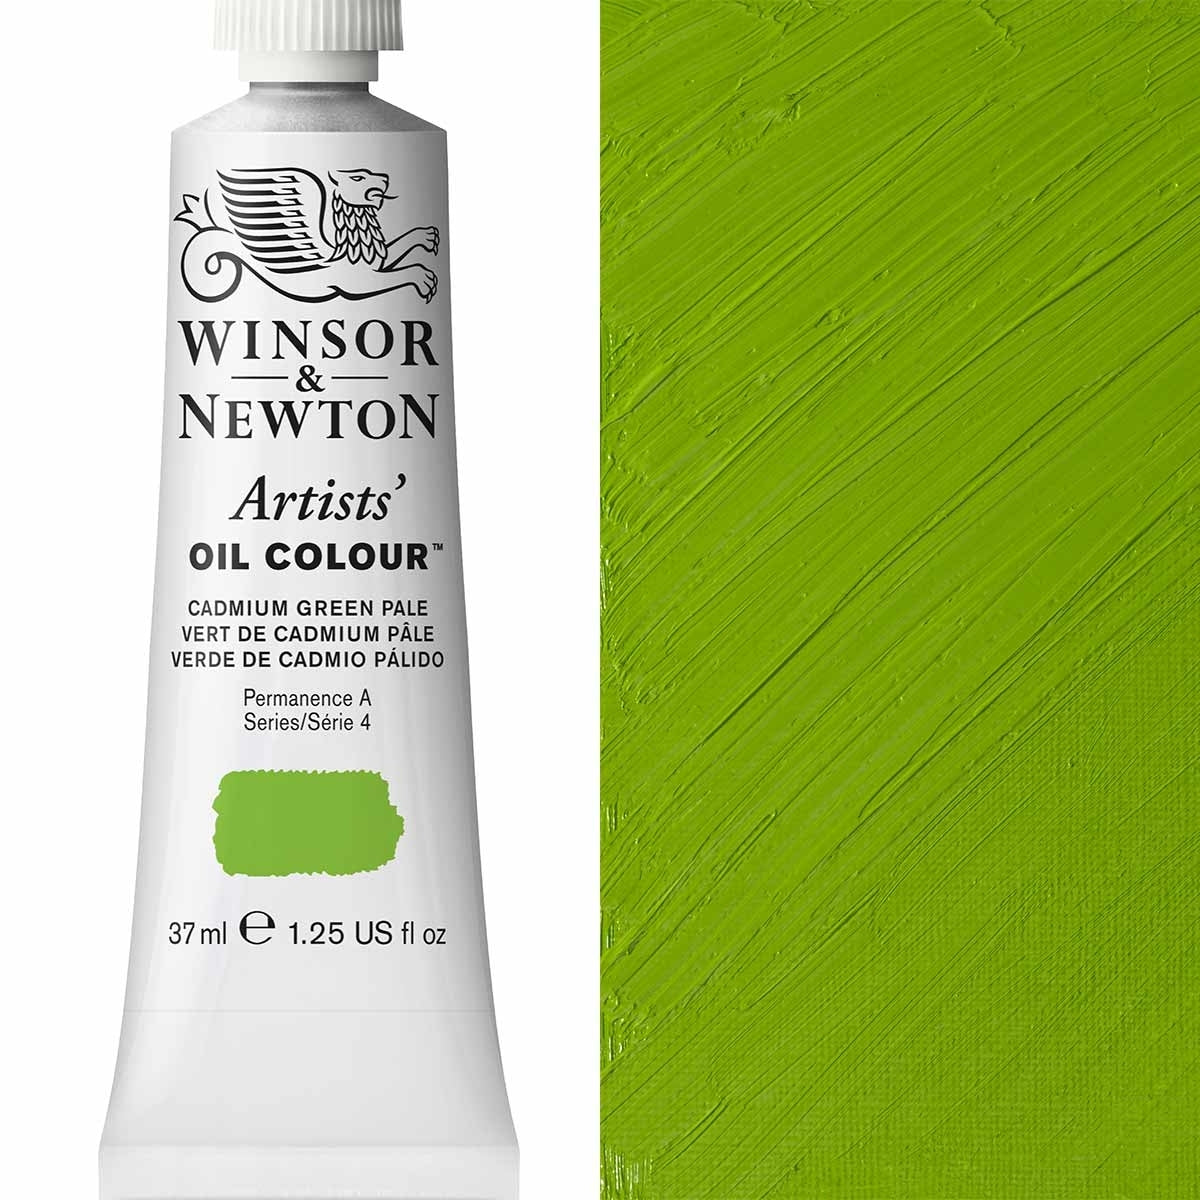 Winsor et Newton - Couleur d'huile des artistes - 37 ml - Cadmium vert pâle